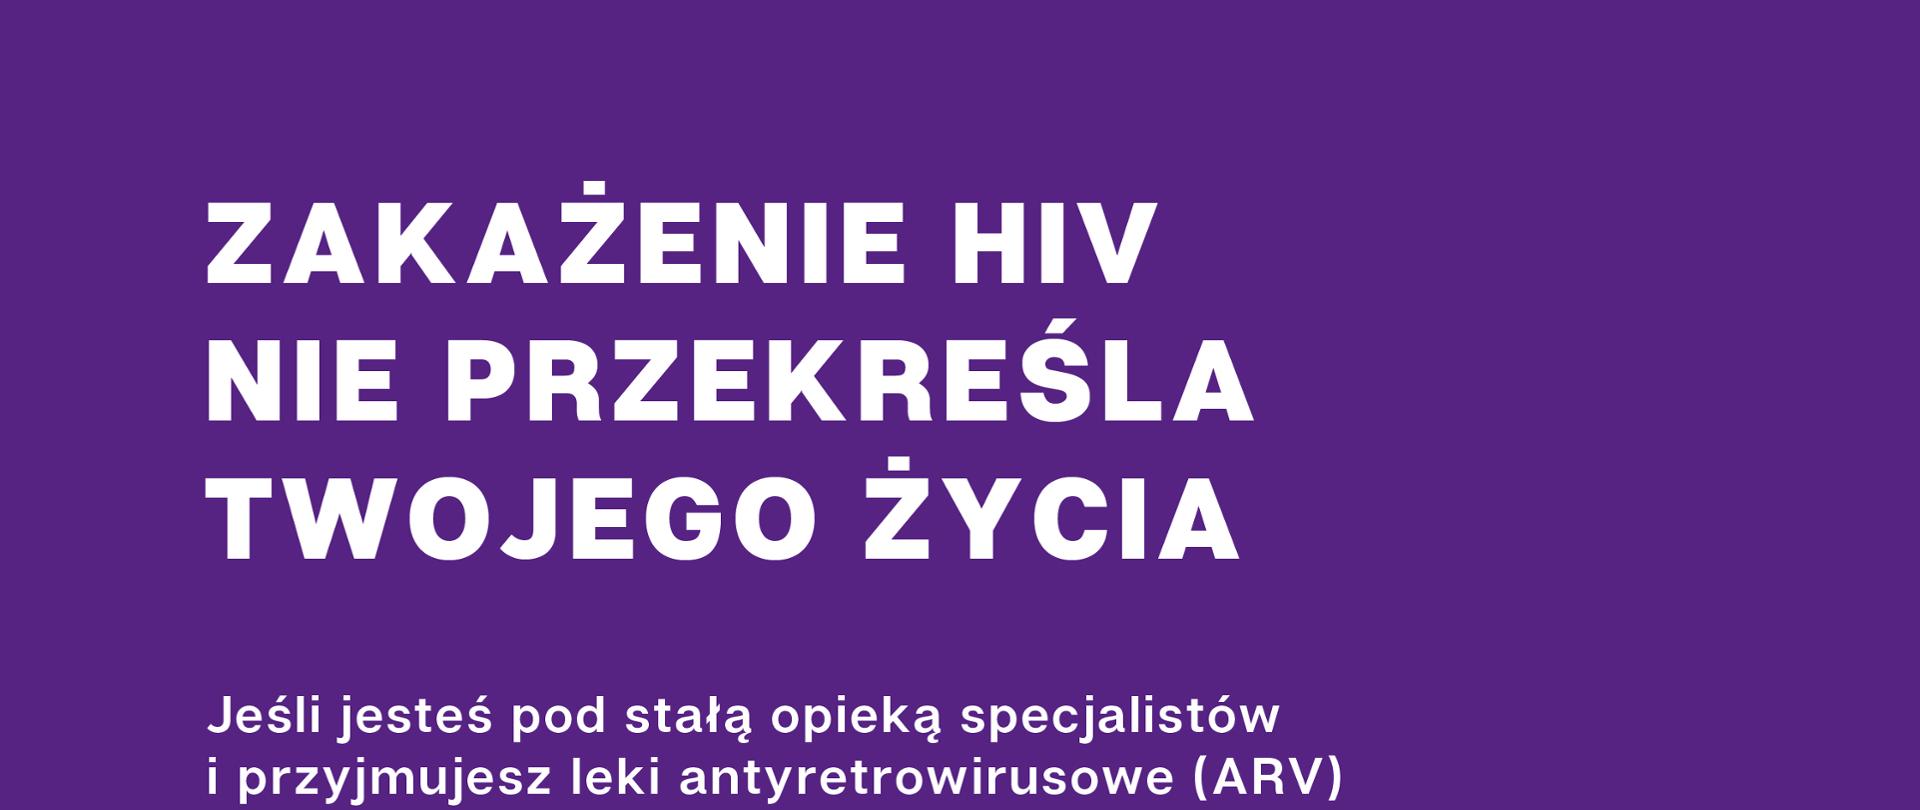 plakat informacyjny mówiący o zakażeniu HIV